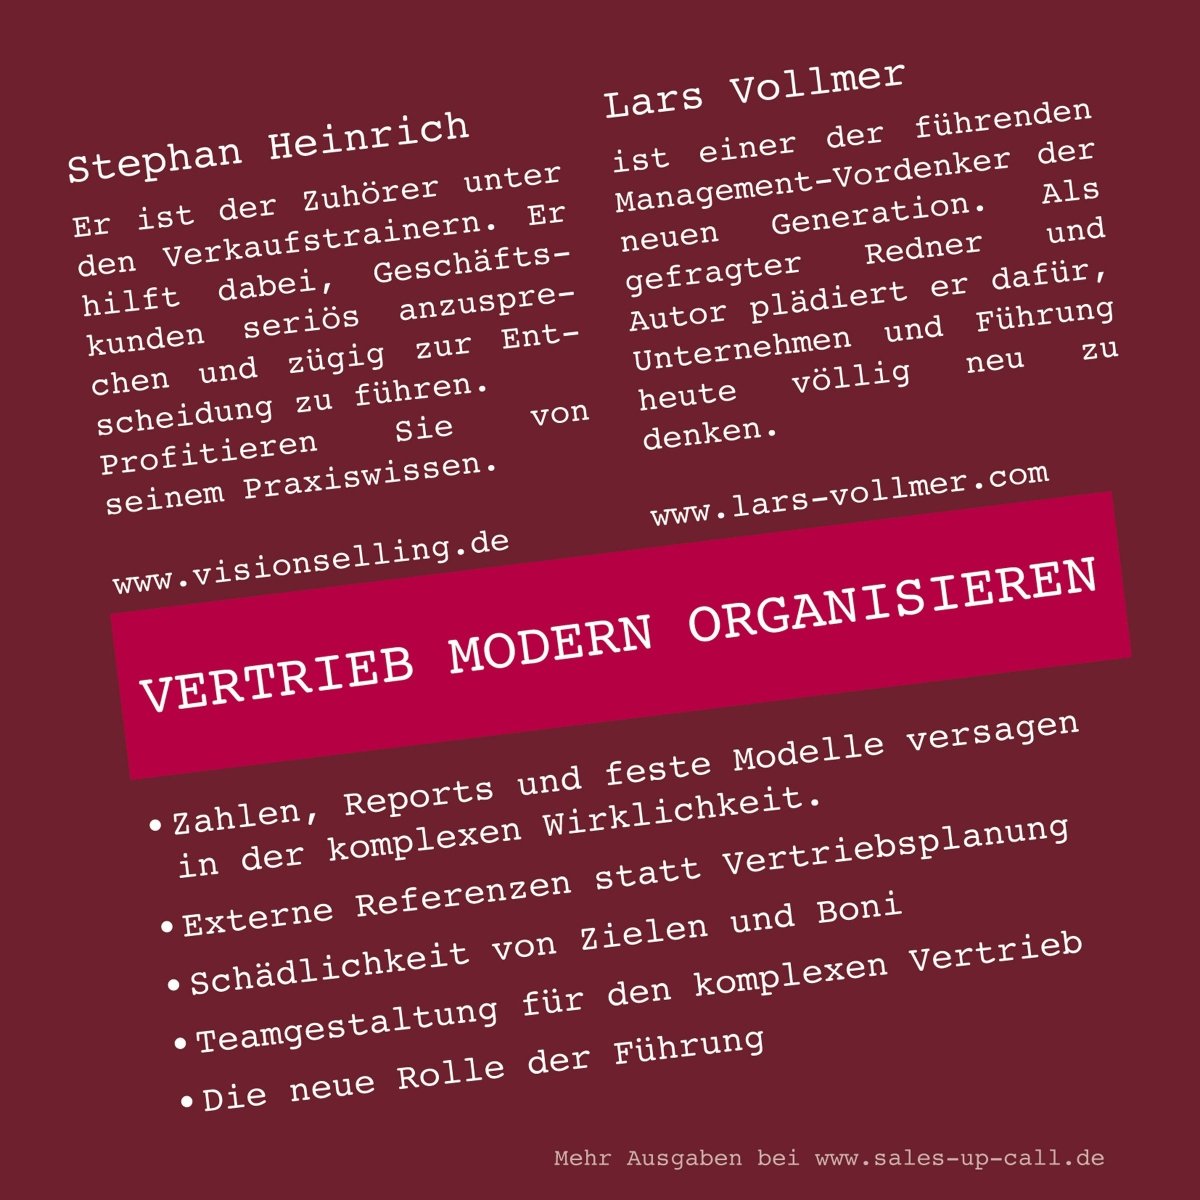 Vertrieb modern organisieren - Sales-up-Call - Stephan Heinrich